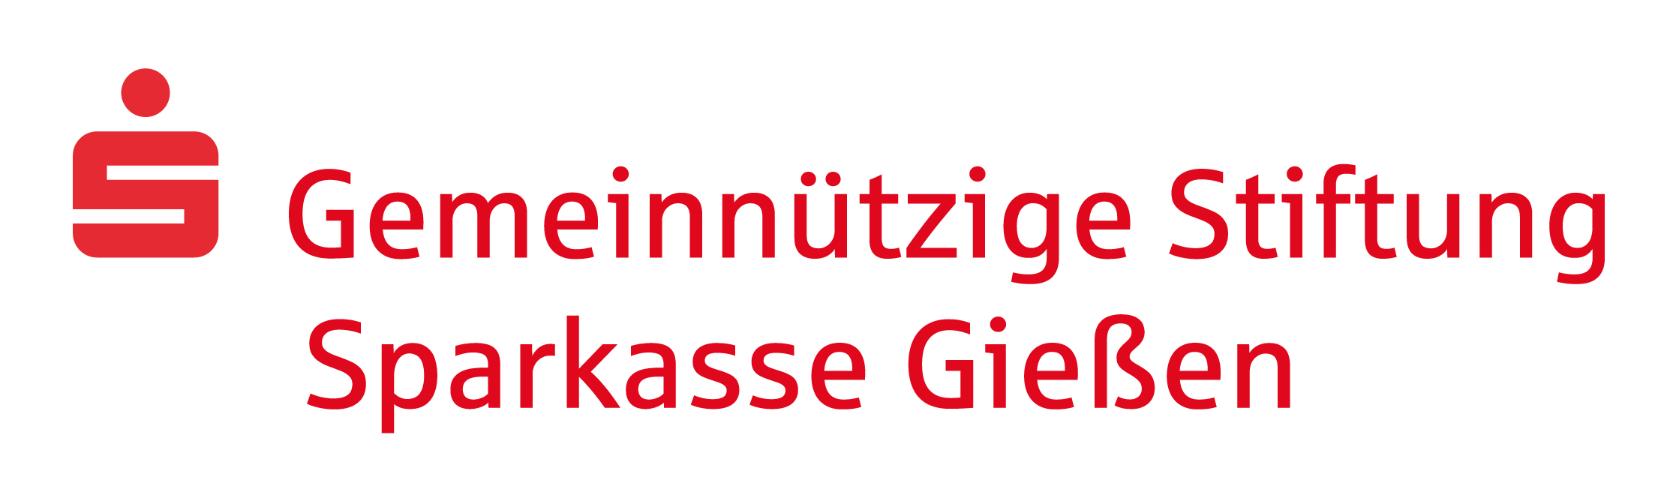 Gemeinnützige Stiftung der Sparkasse Gießen (c) Gemeinnützige Stiftung der Sparkasse Gießen